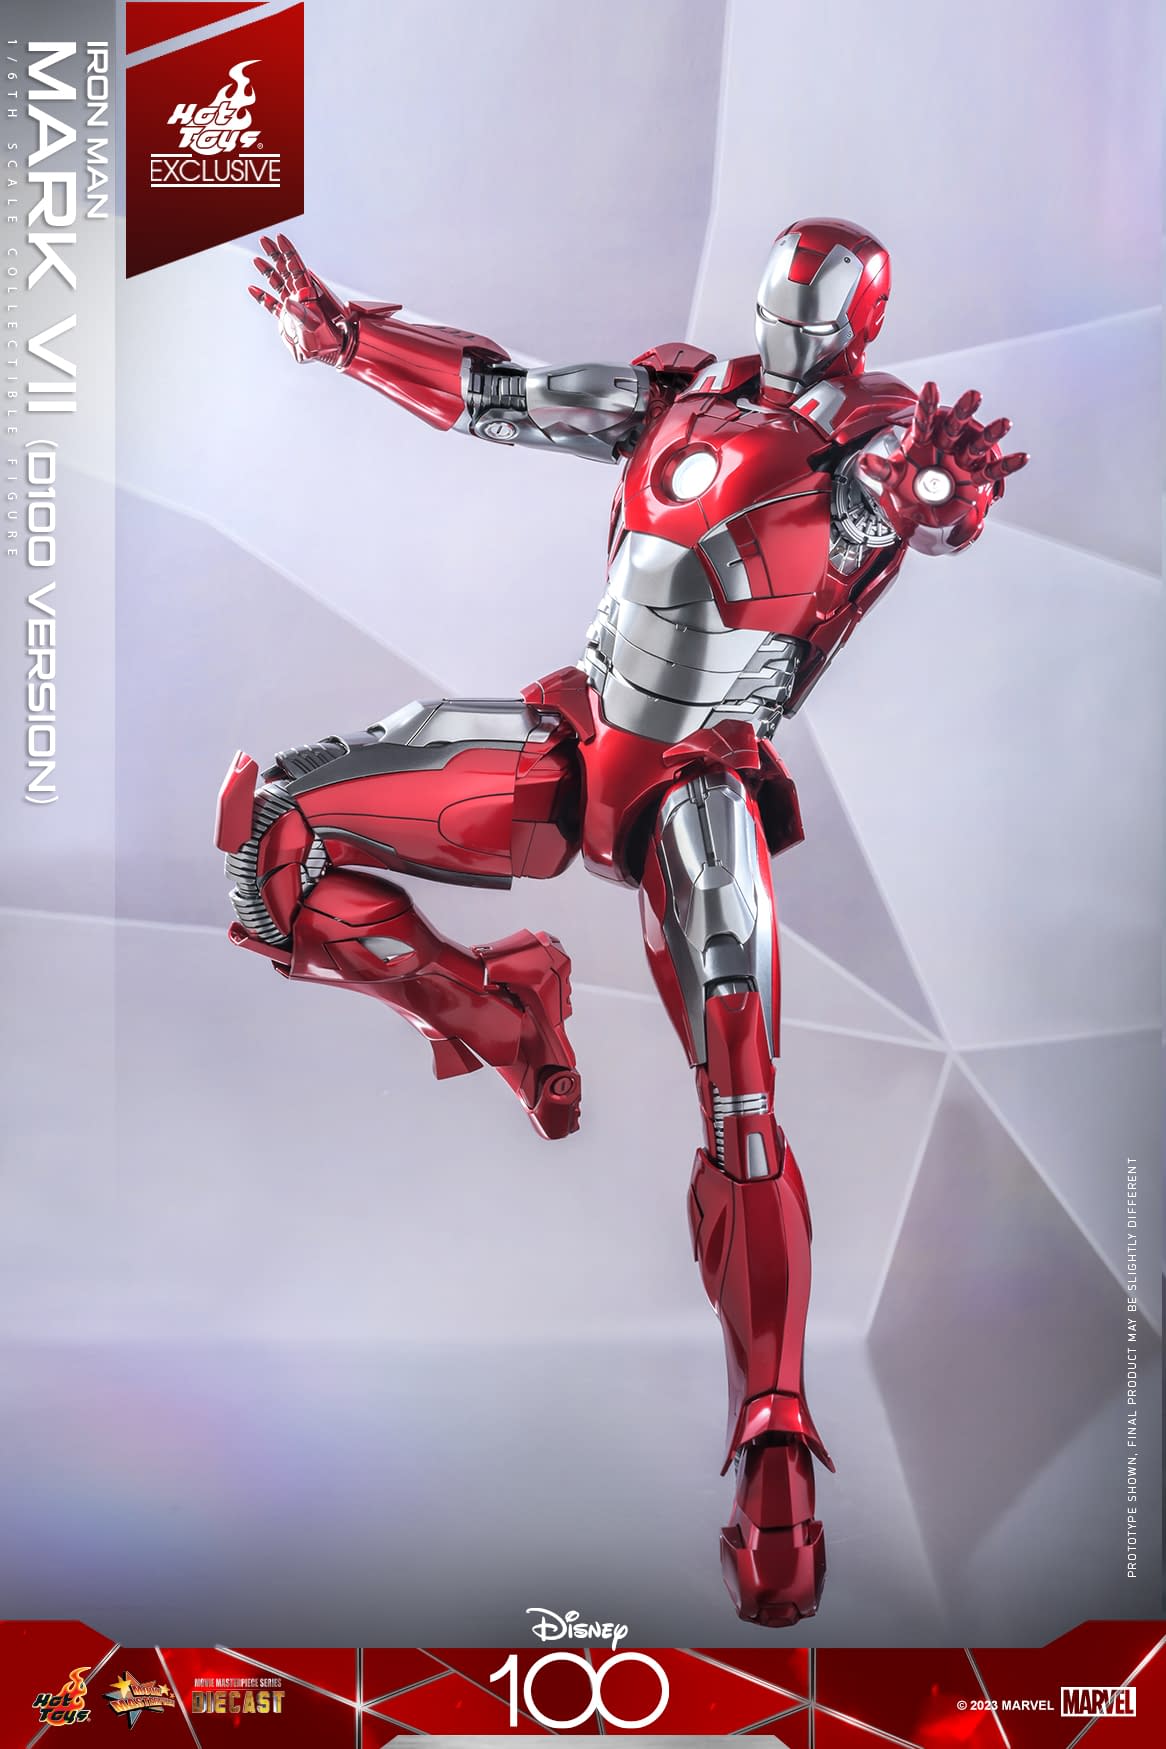 Hot Toys Deploys New Exclusive Iron Man Mark VII Disney 100 Figure 